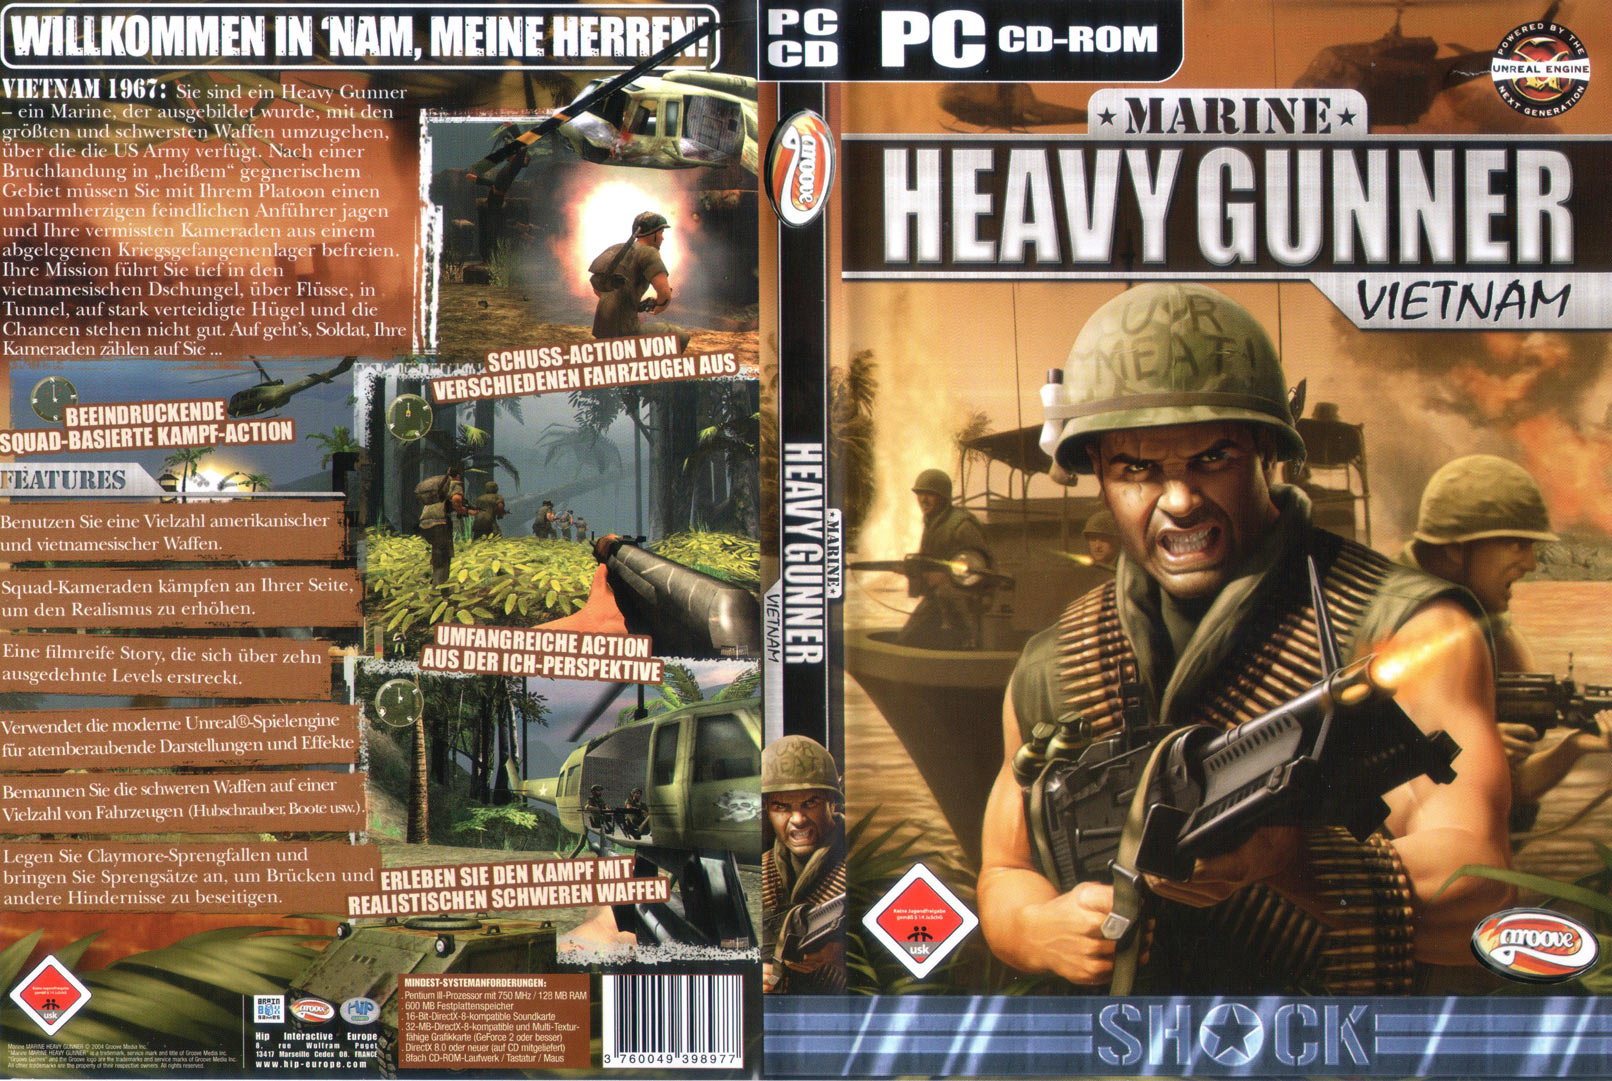 Marine Heavy Gunner: Vietnam - DVD obal